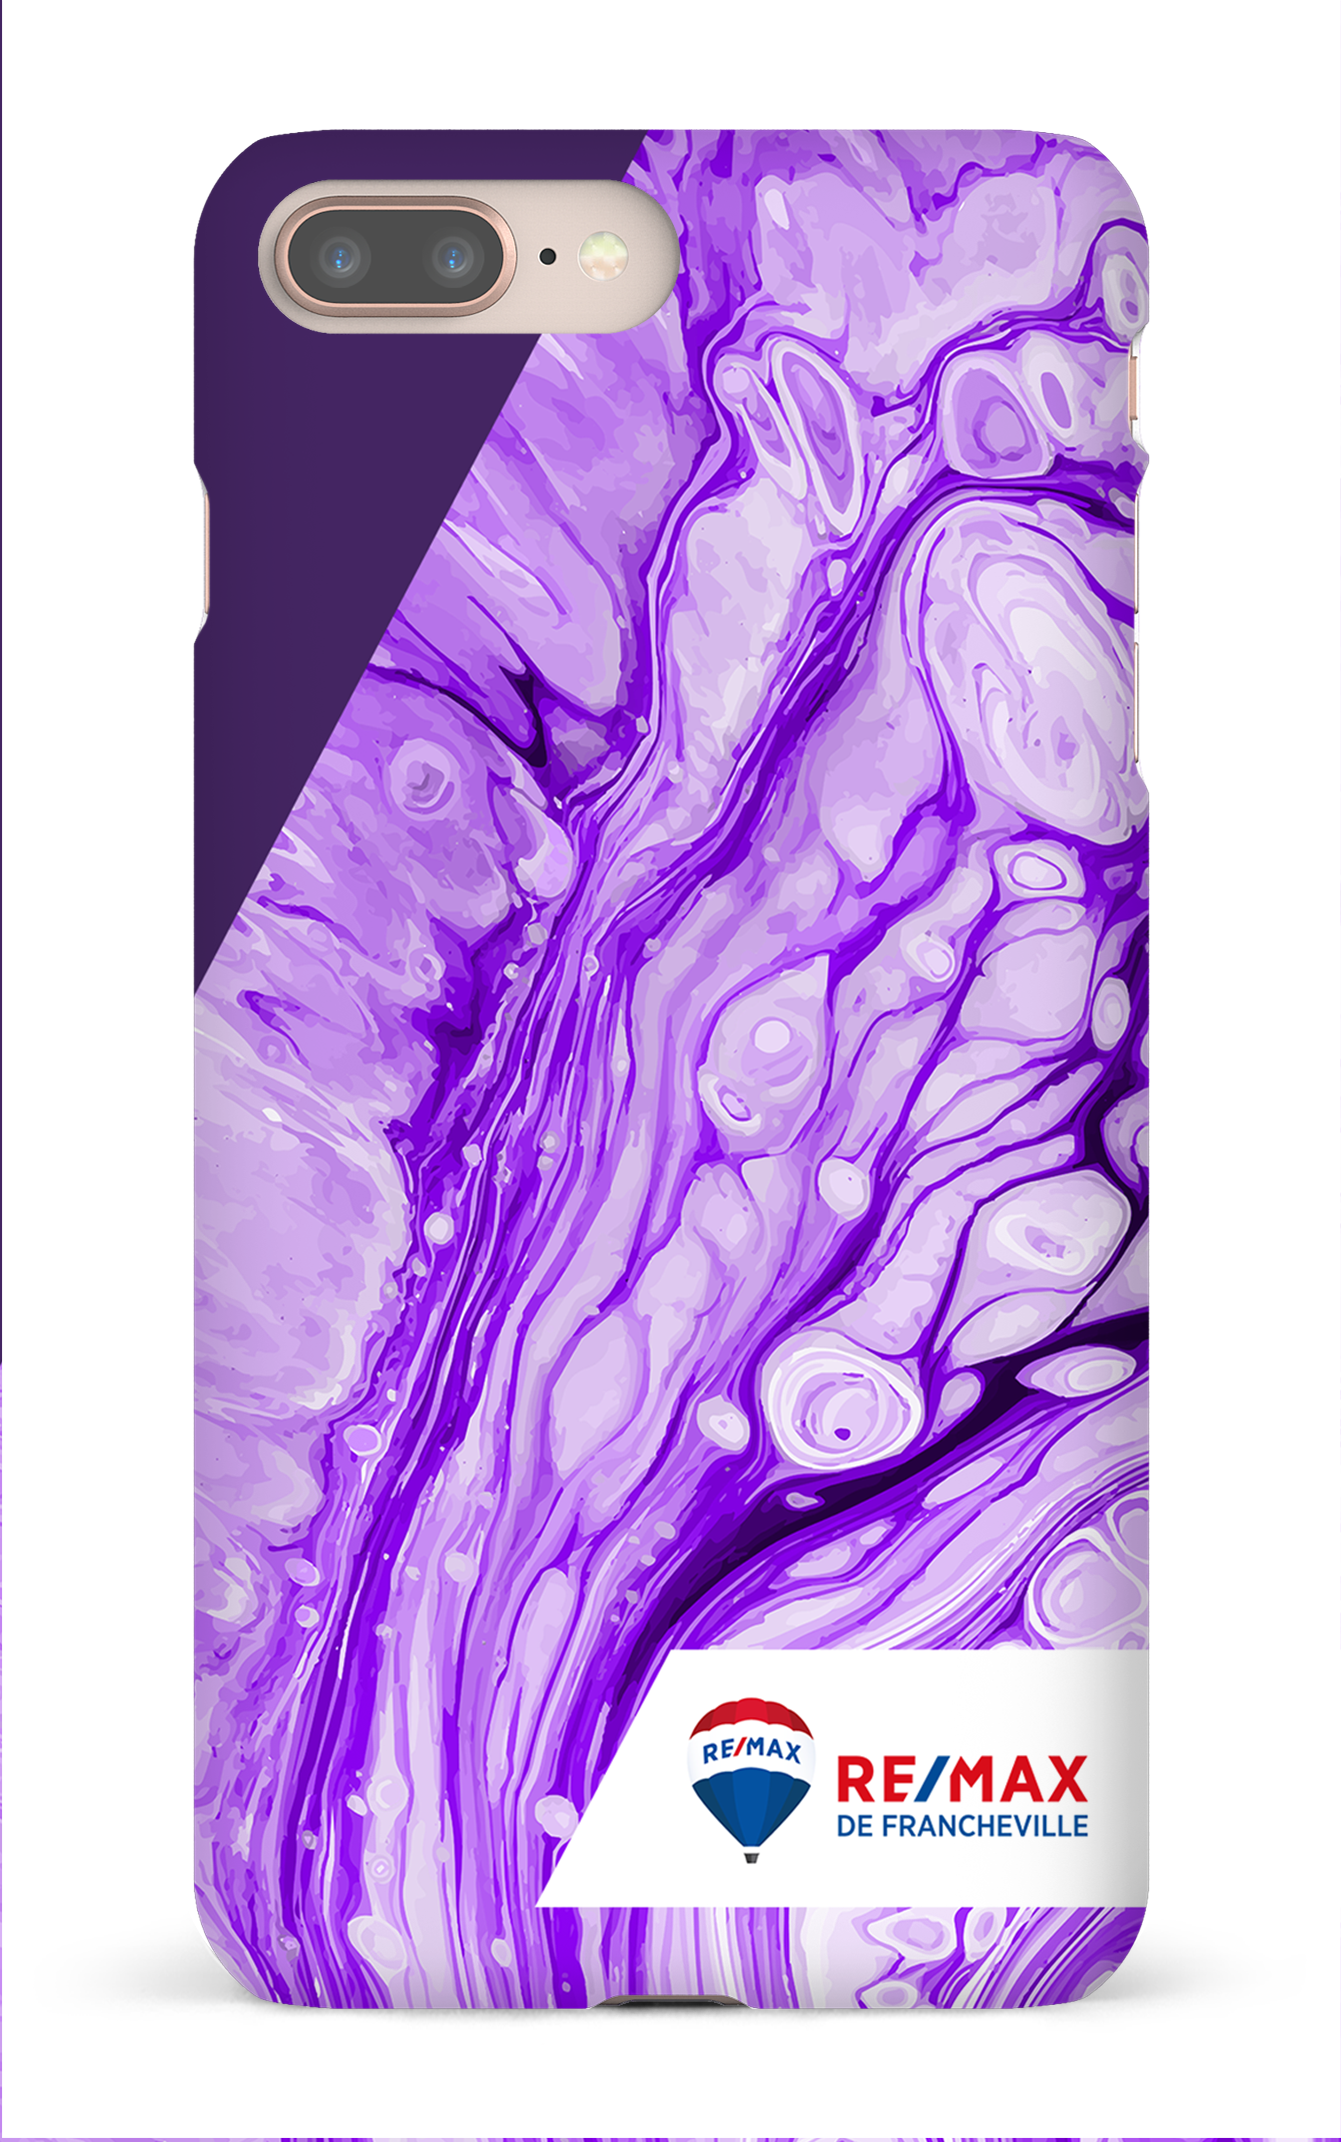 Peinture marbrée claire violette de Francheville - iPhone 8 Plus